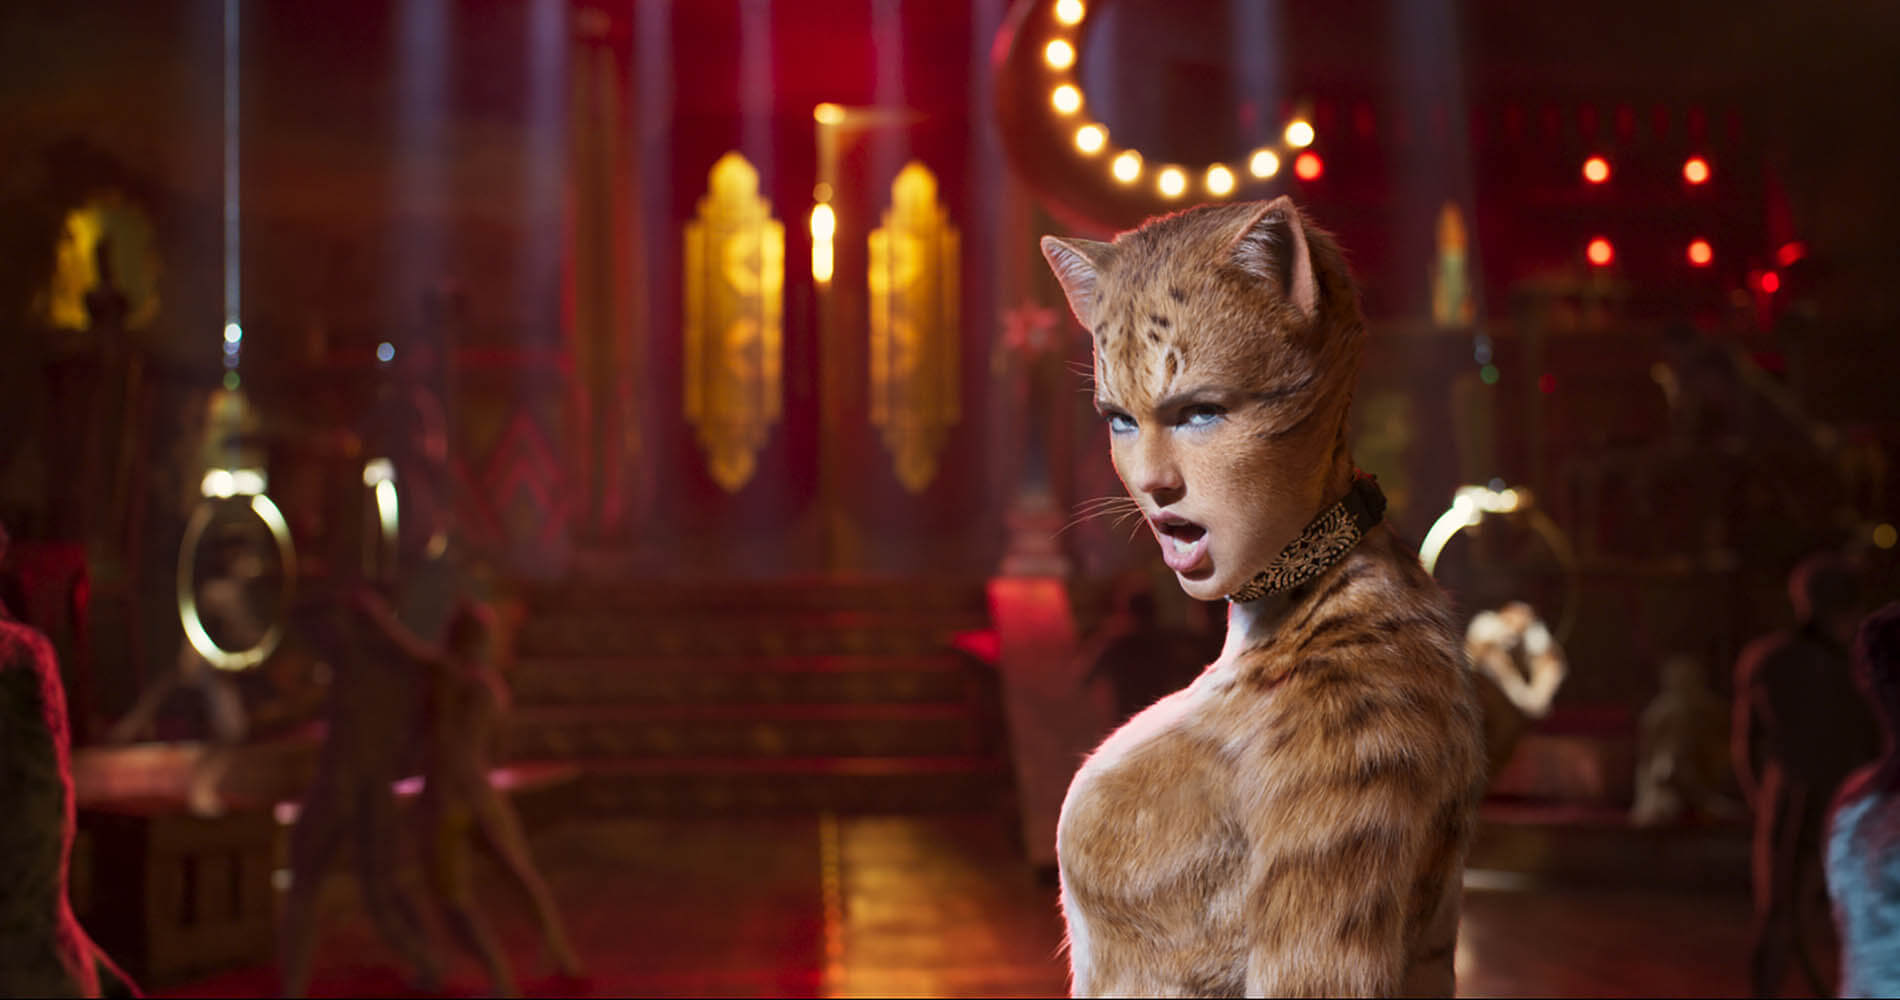 Cats-elokuvassa näyttelijät muuntuvat tietokonegrafiikan avulla kissoiksi. Mukana on muun muassa poptähti Taylor Swift.